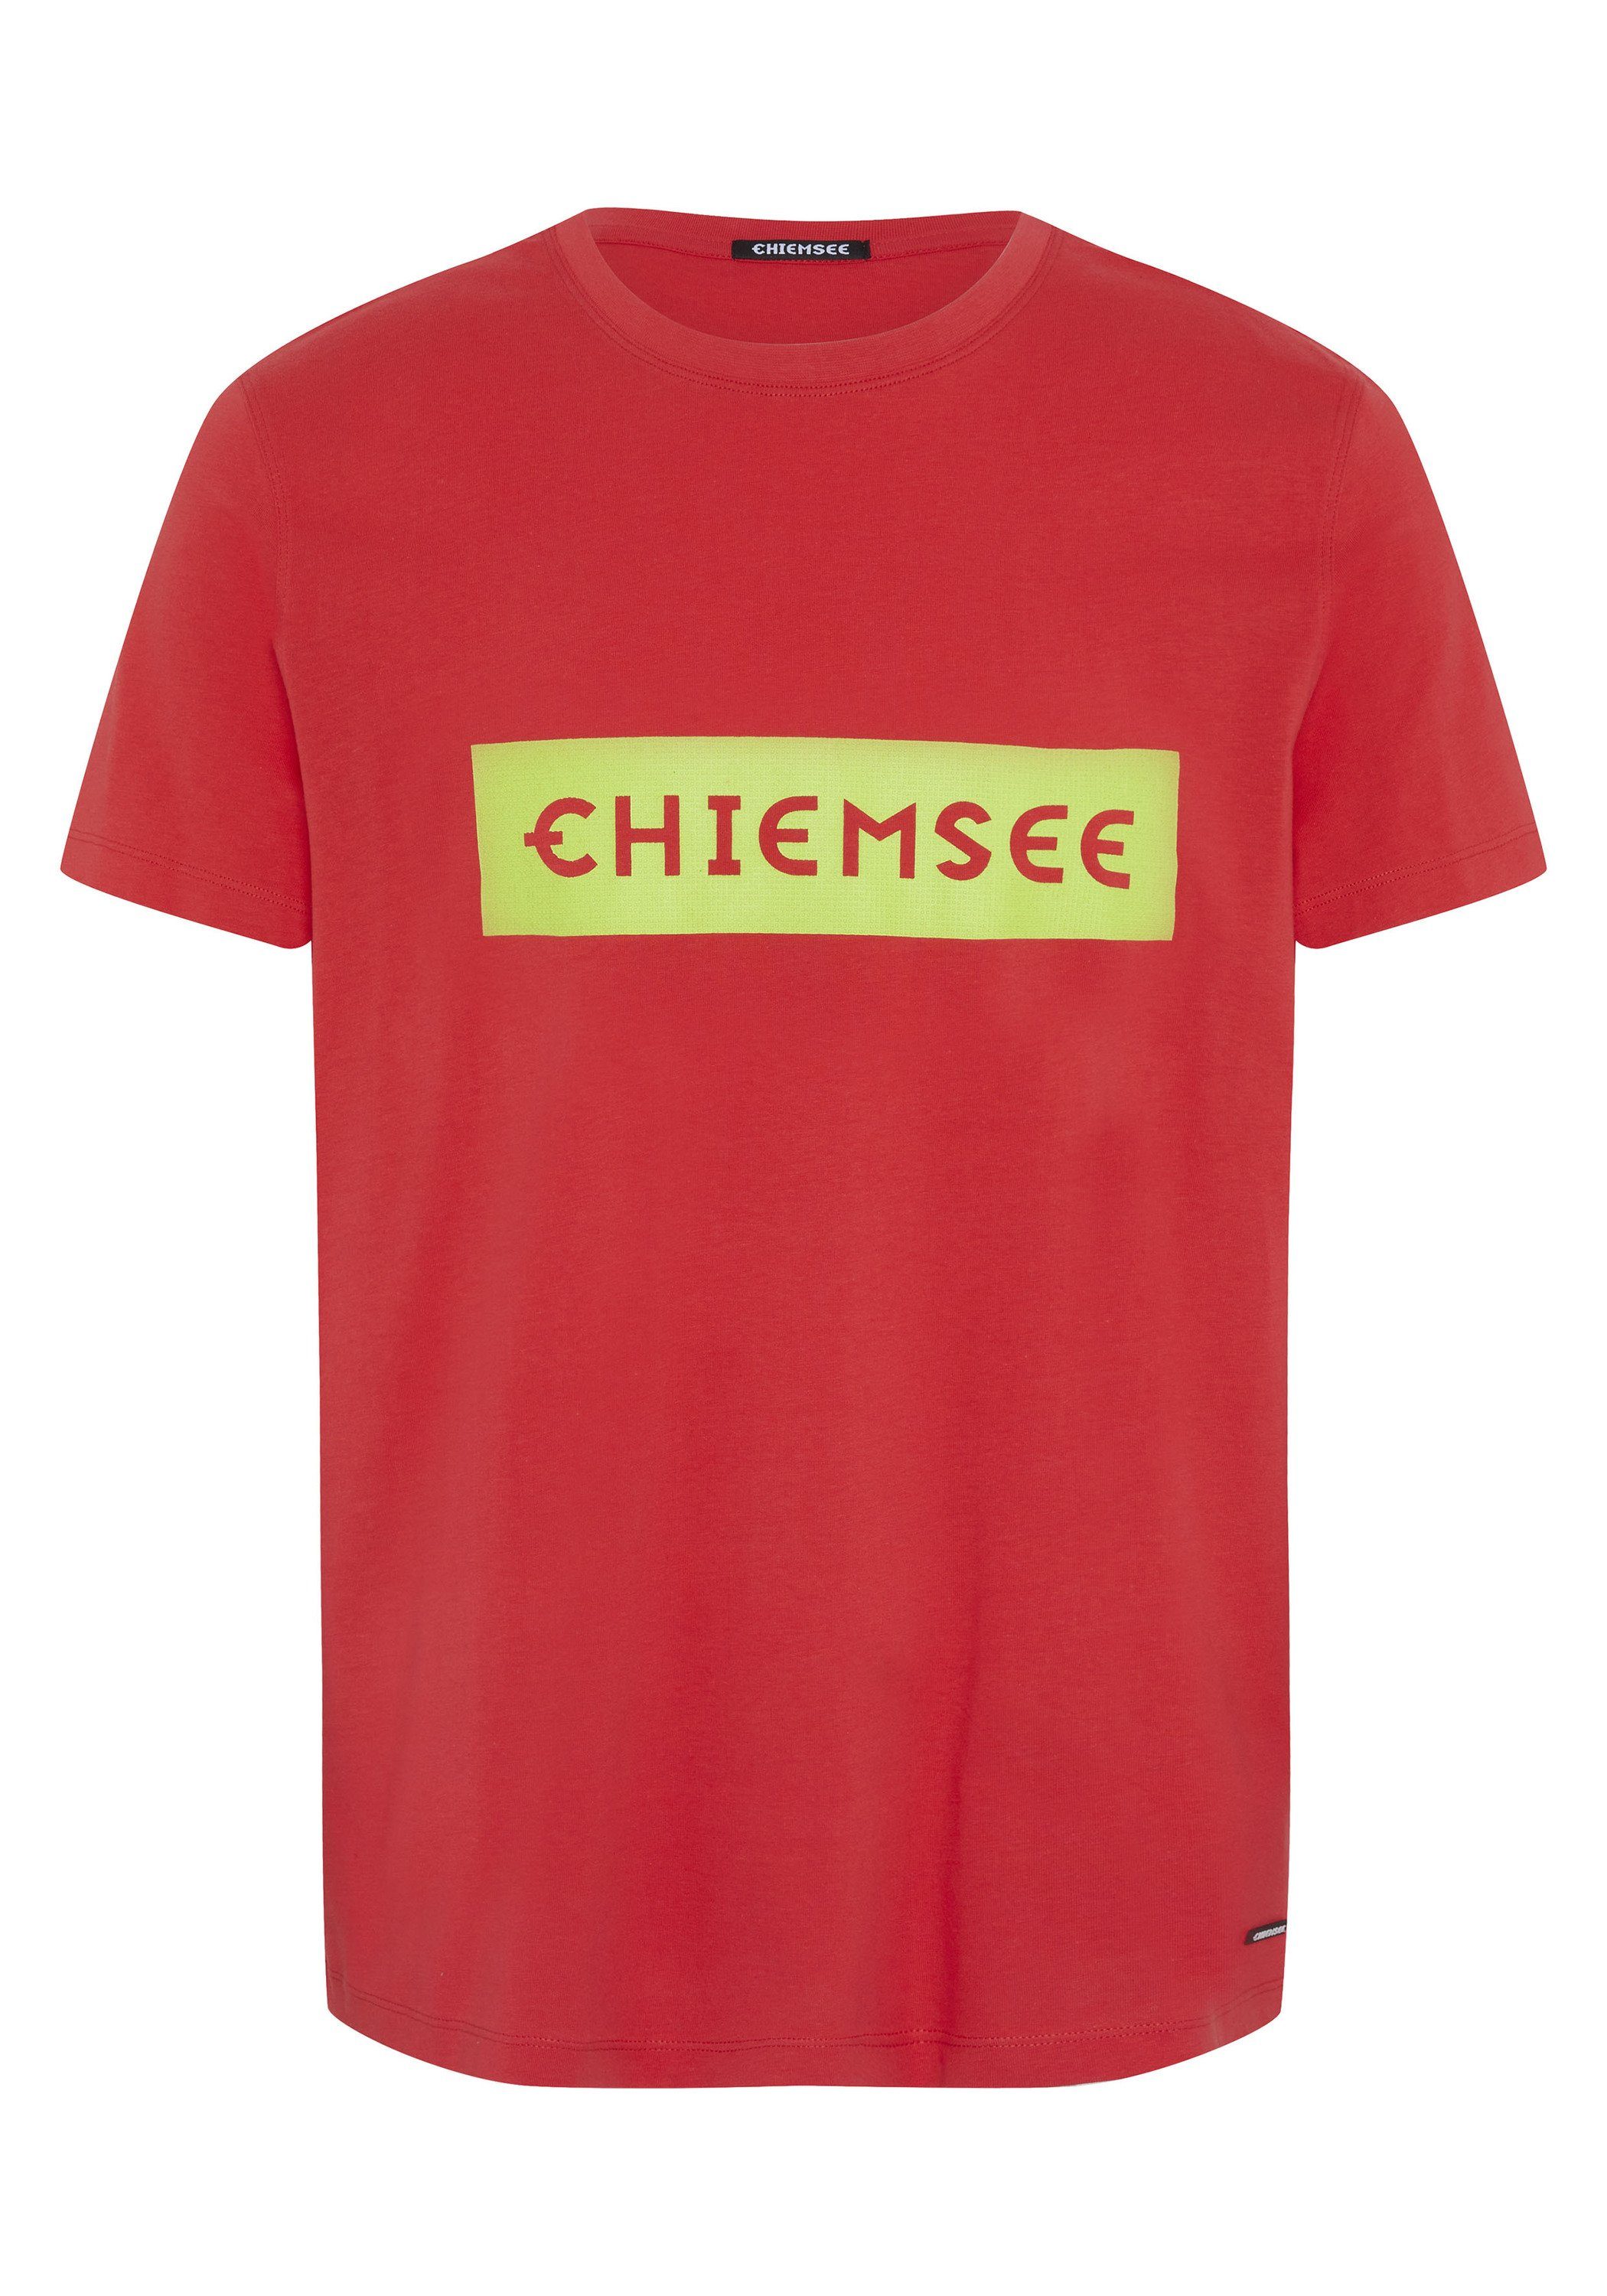 Bittersweet mit Chiemsee T-Shirt 17-1663 1 Markenschriftzug plakativem Print-Shirt